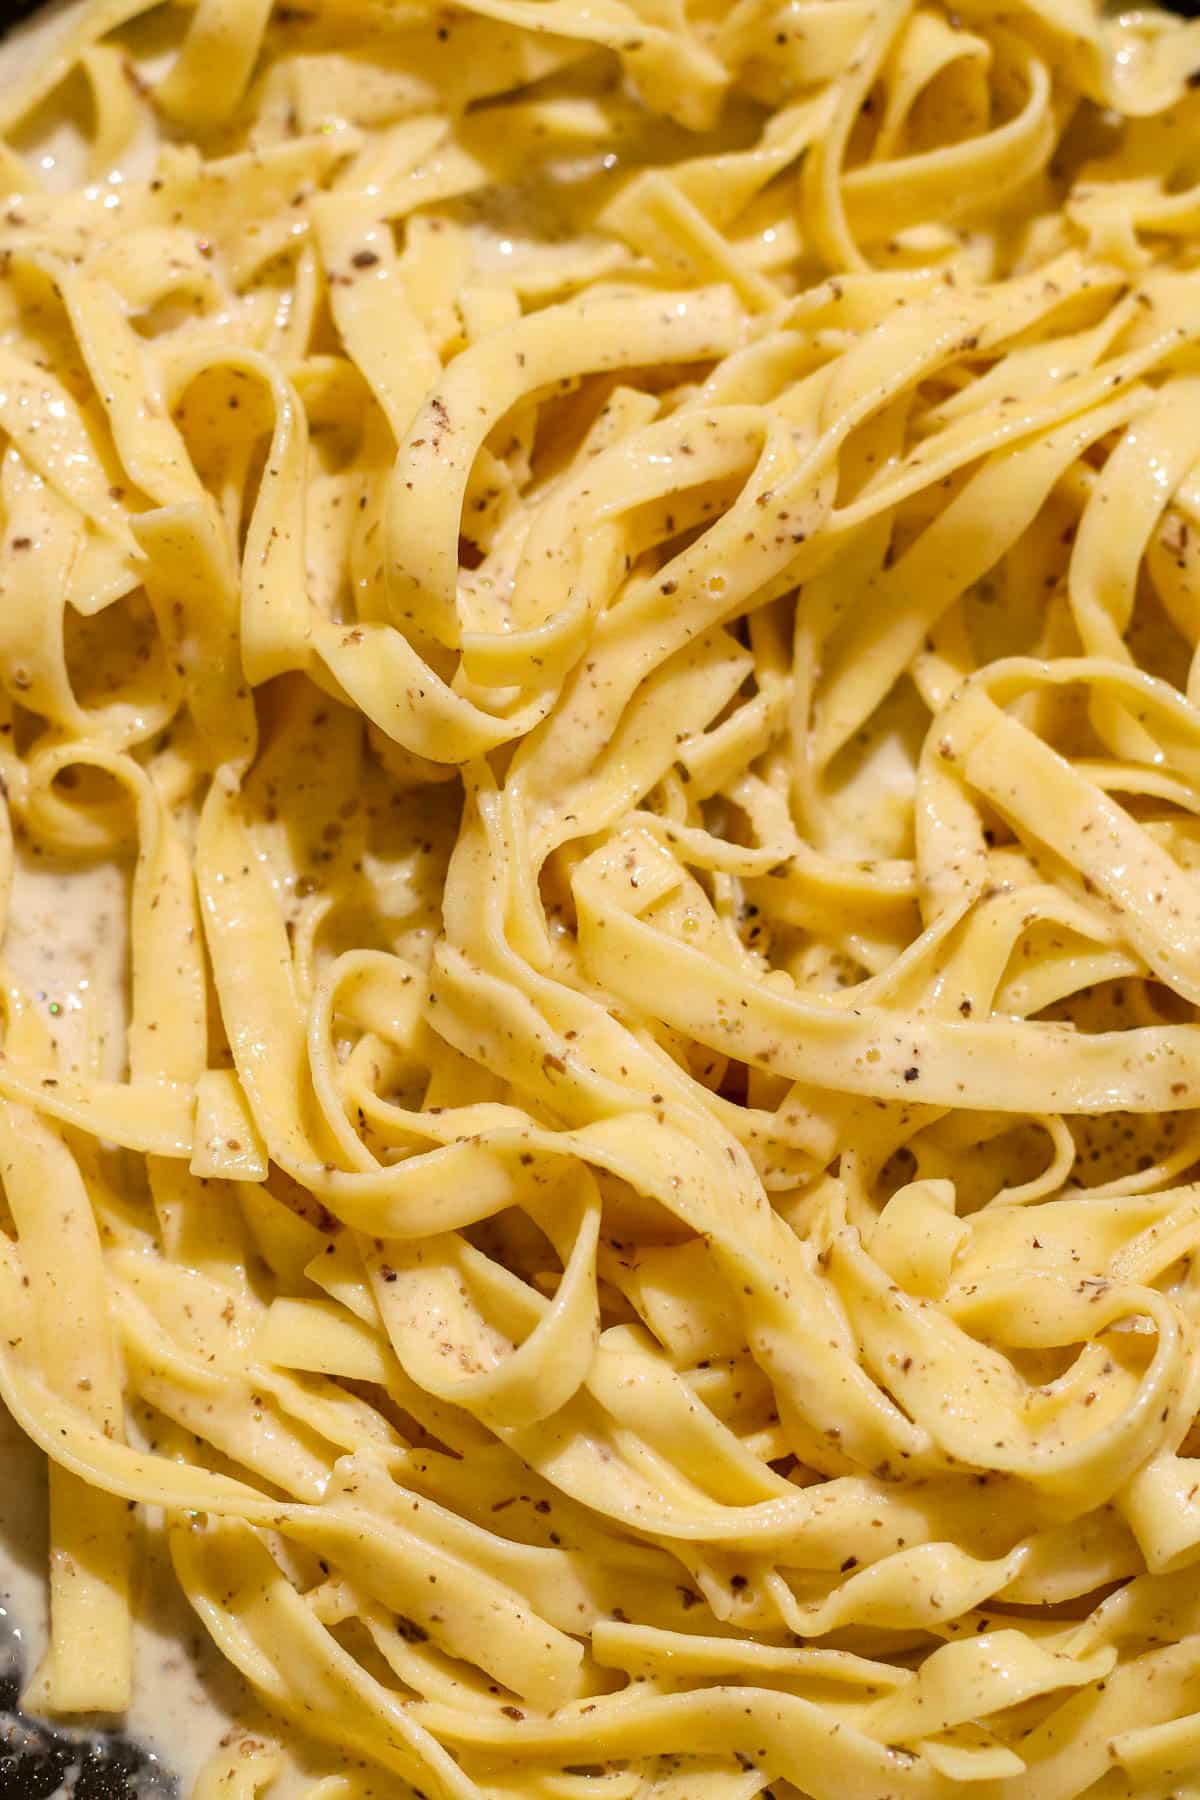 pasta mixed into sauce.